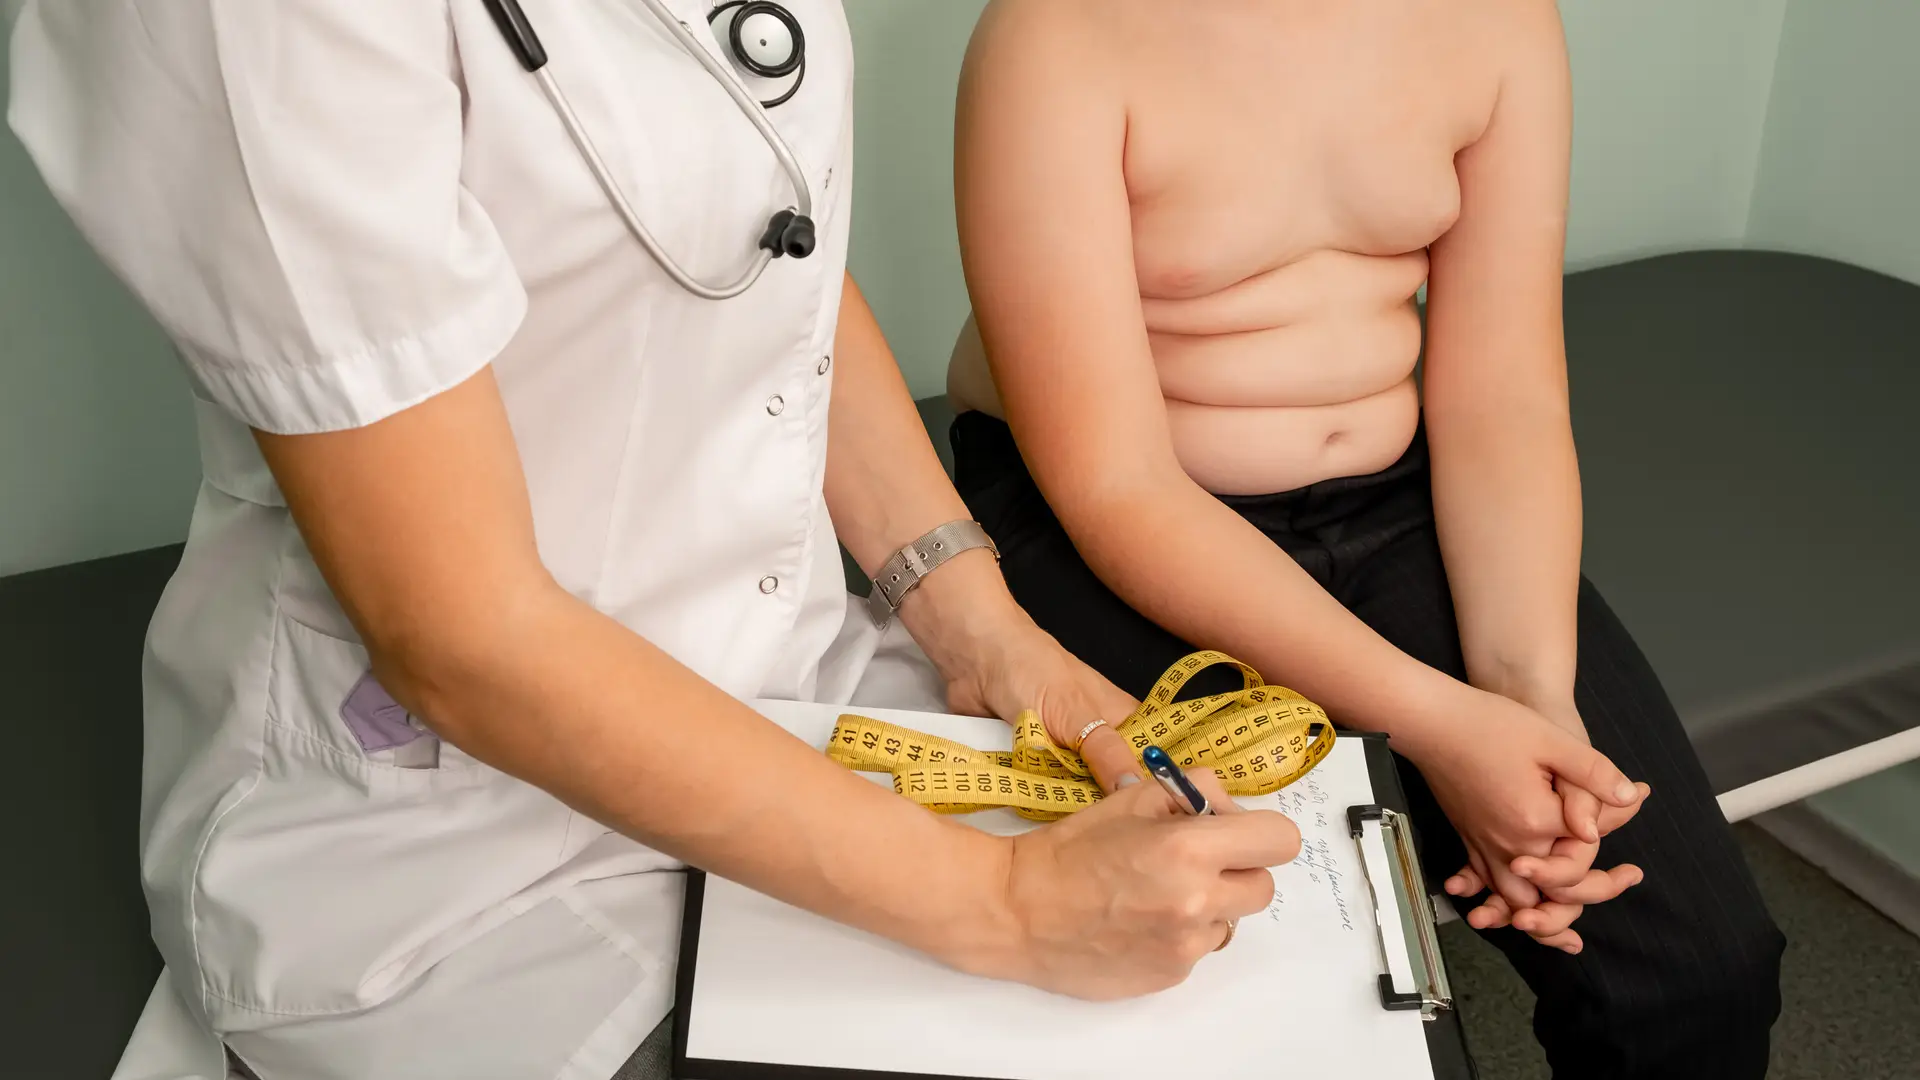 niño en la consulta del medico al que quieren controlar su obesidad infantil